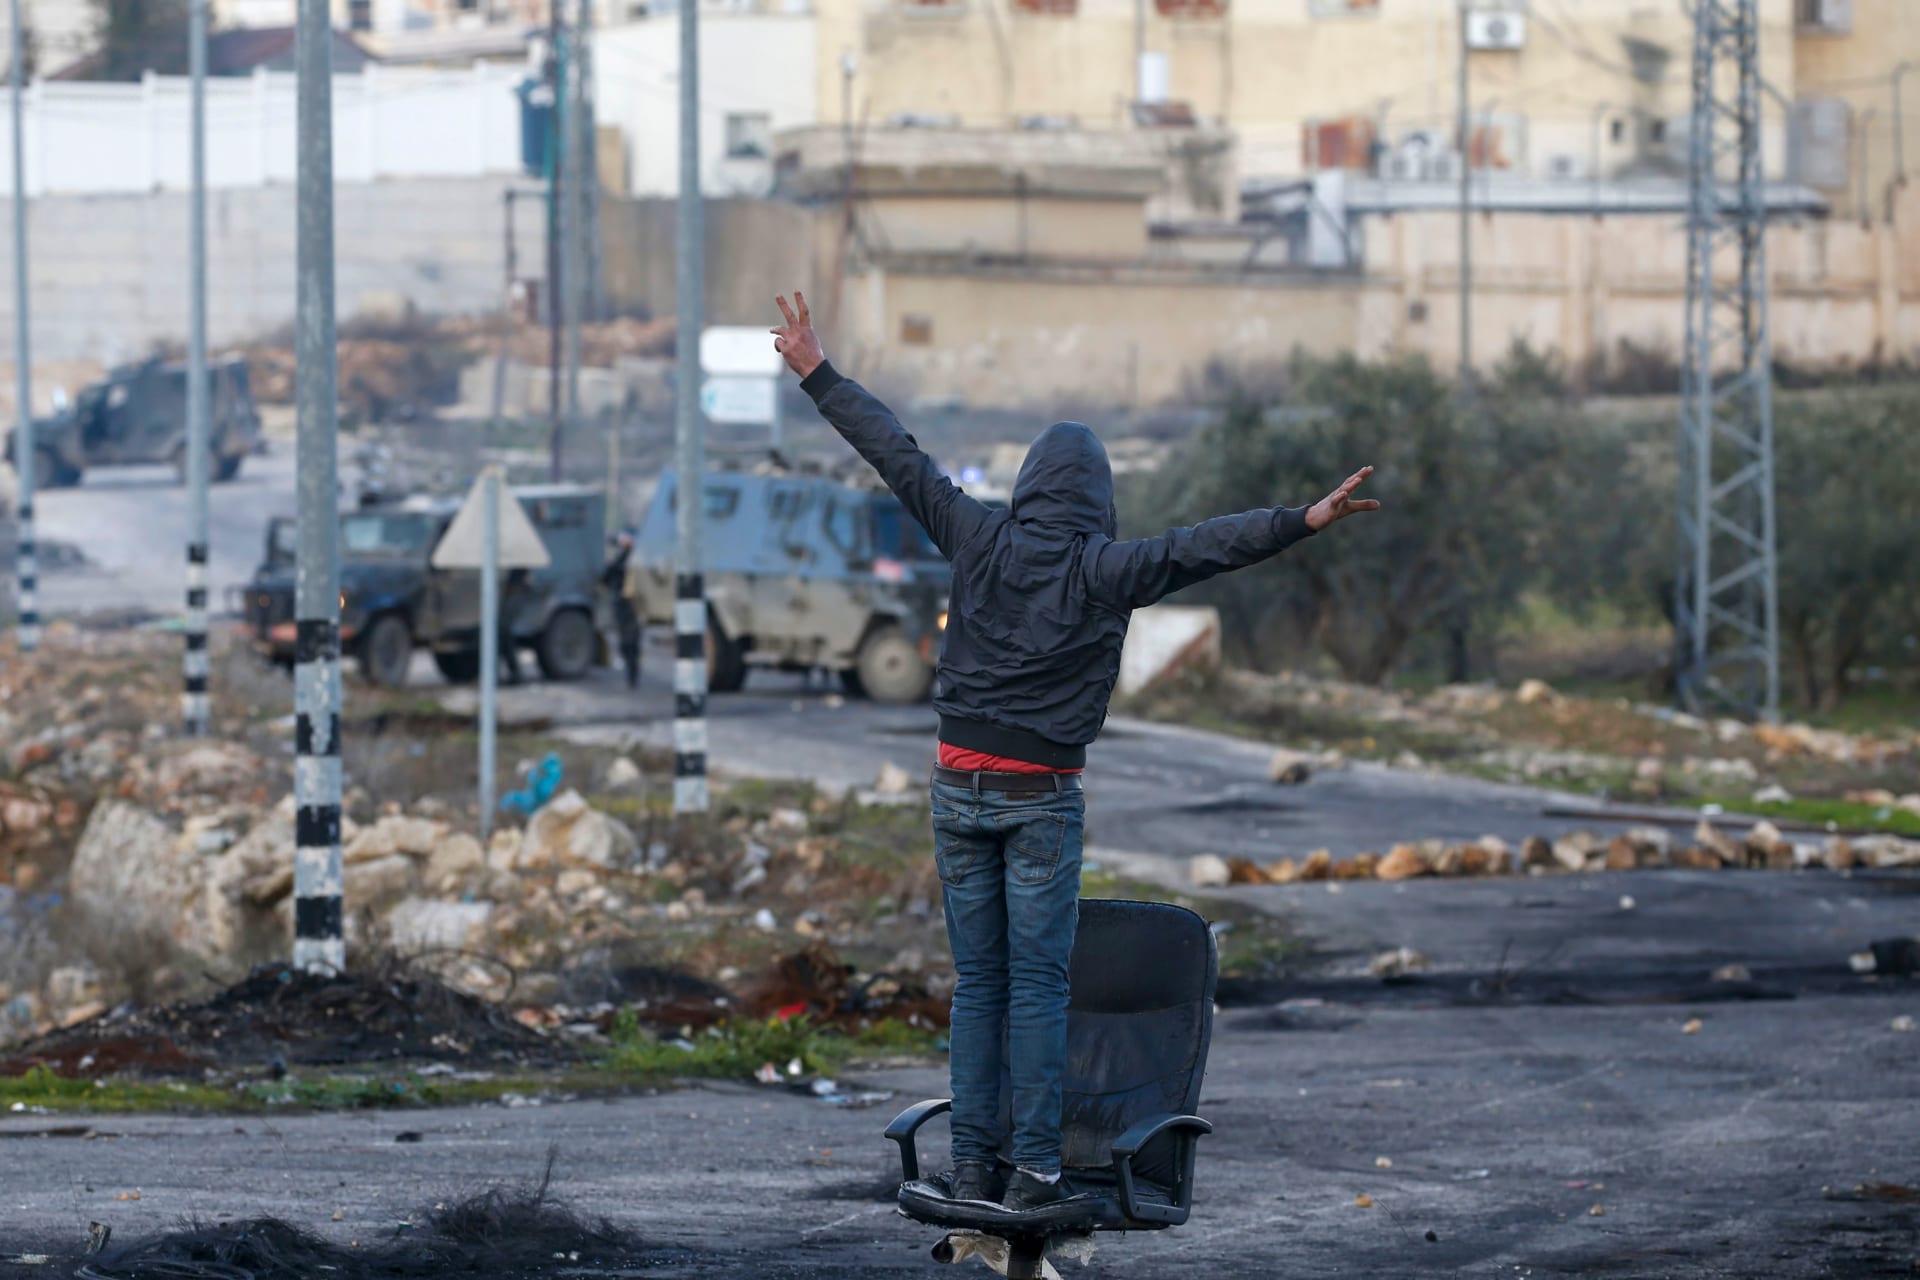 متظاهر فلسطيني مقابل قوات الأمن الإسرائيلية خلال الاشتباكات عقب مظاهرة احتجاج على اقتراح خطة سلام أمريكية